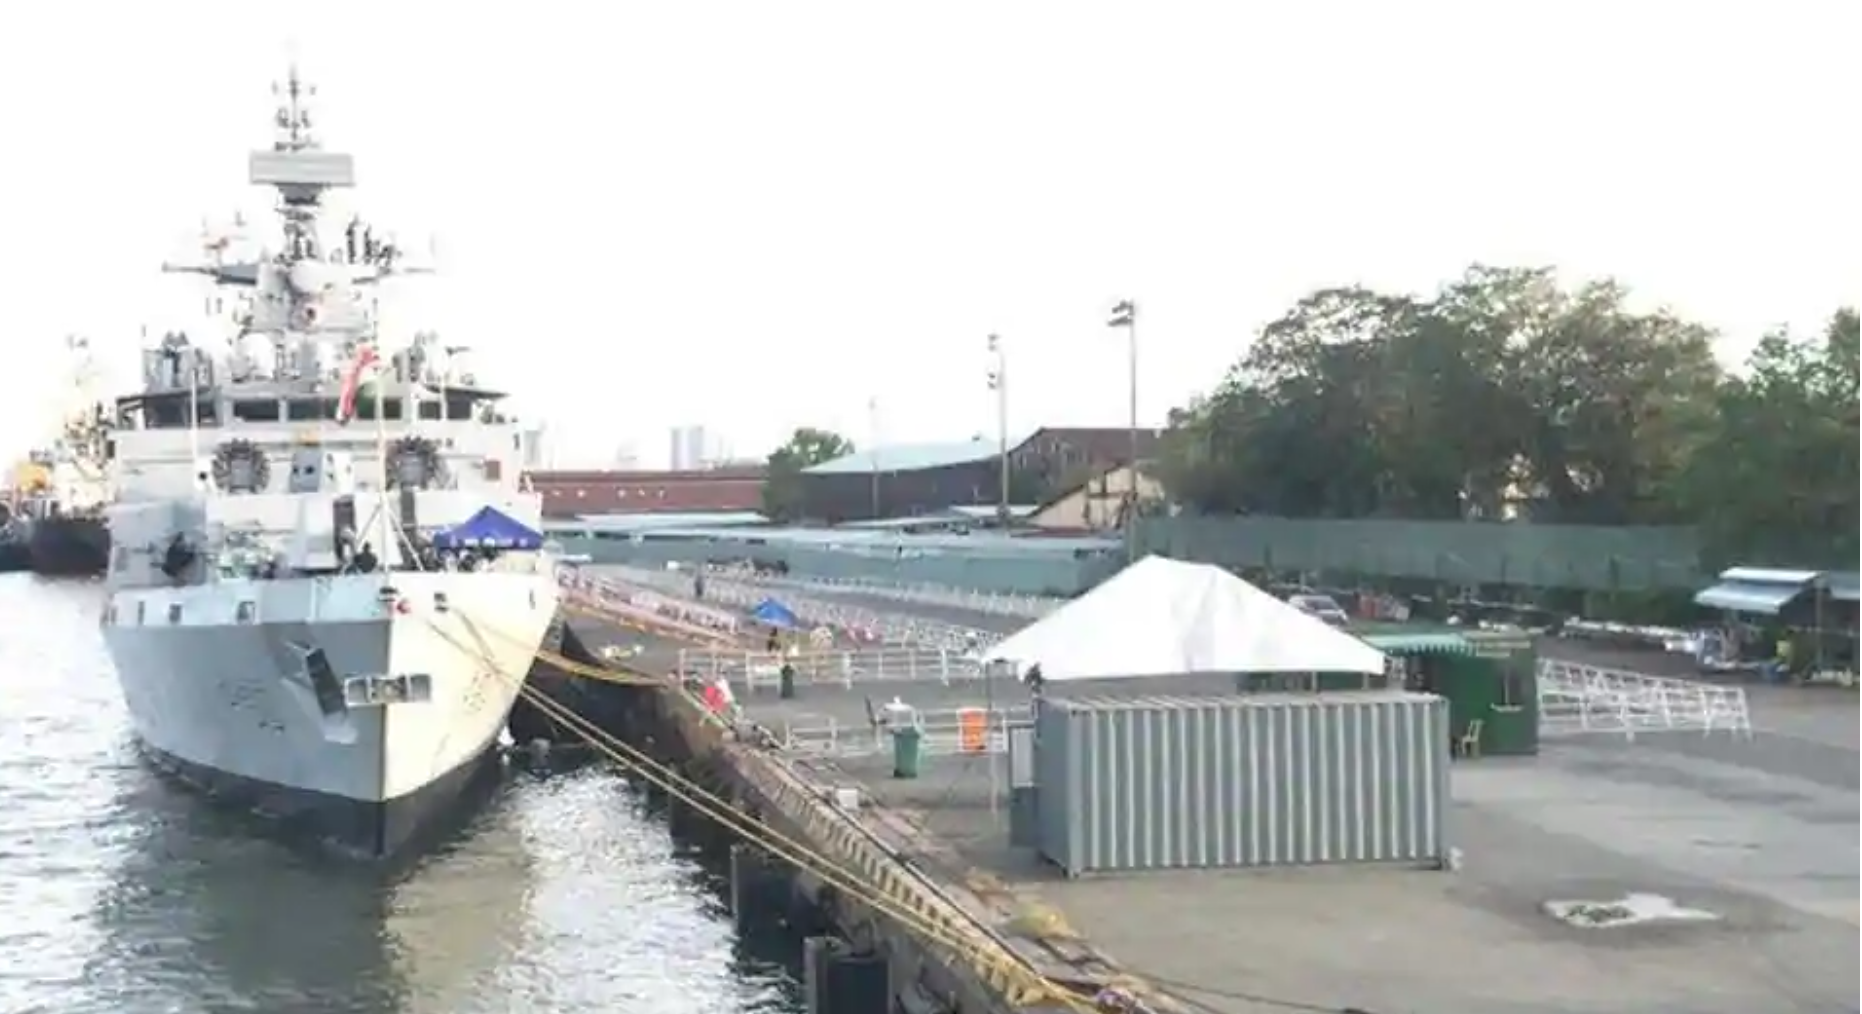 Tàu Ấn Độ INS Kiltan tại cảng Nhà Rồng, tp.HCM để chuẩn bị cho cuộc tập trận ở Biển Đông ngày 26-27/12/2020 (ảnh: Twitter).